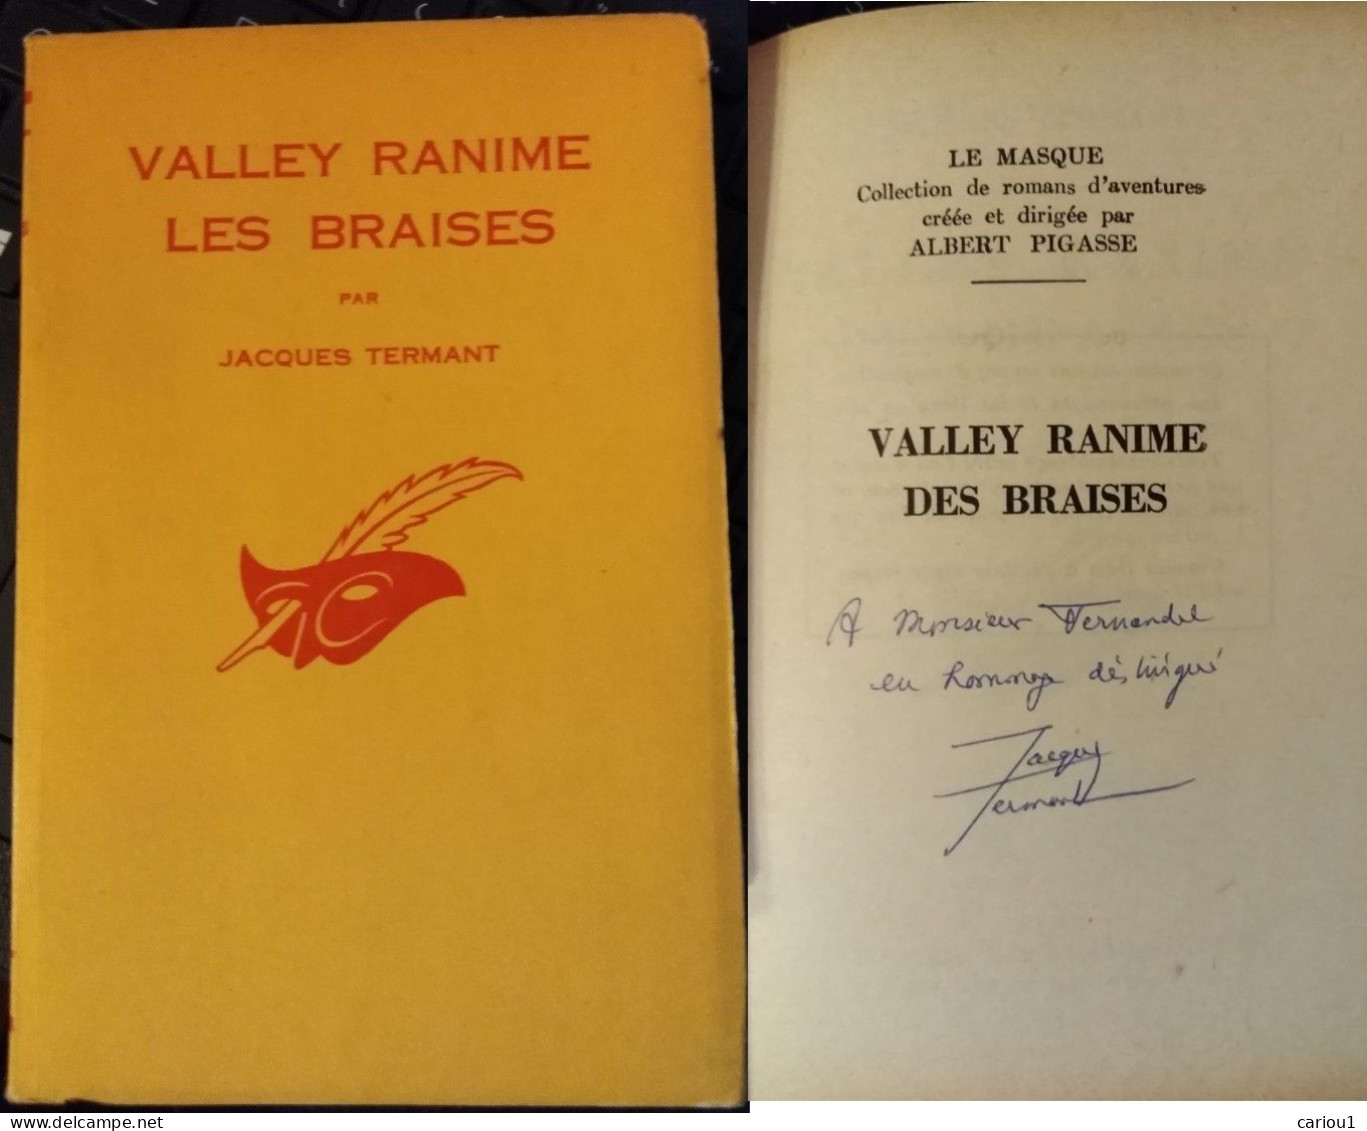 C1 Francois BALSAN Termant VALLEY RANIME LES BRAISES 1962 Envoi DEDICACE SIGNED Port Inclus France - Libros Autografiados